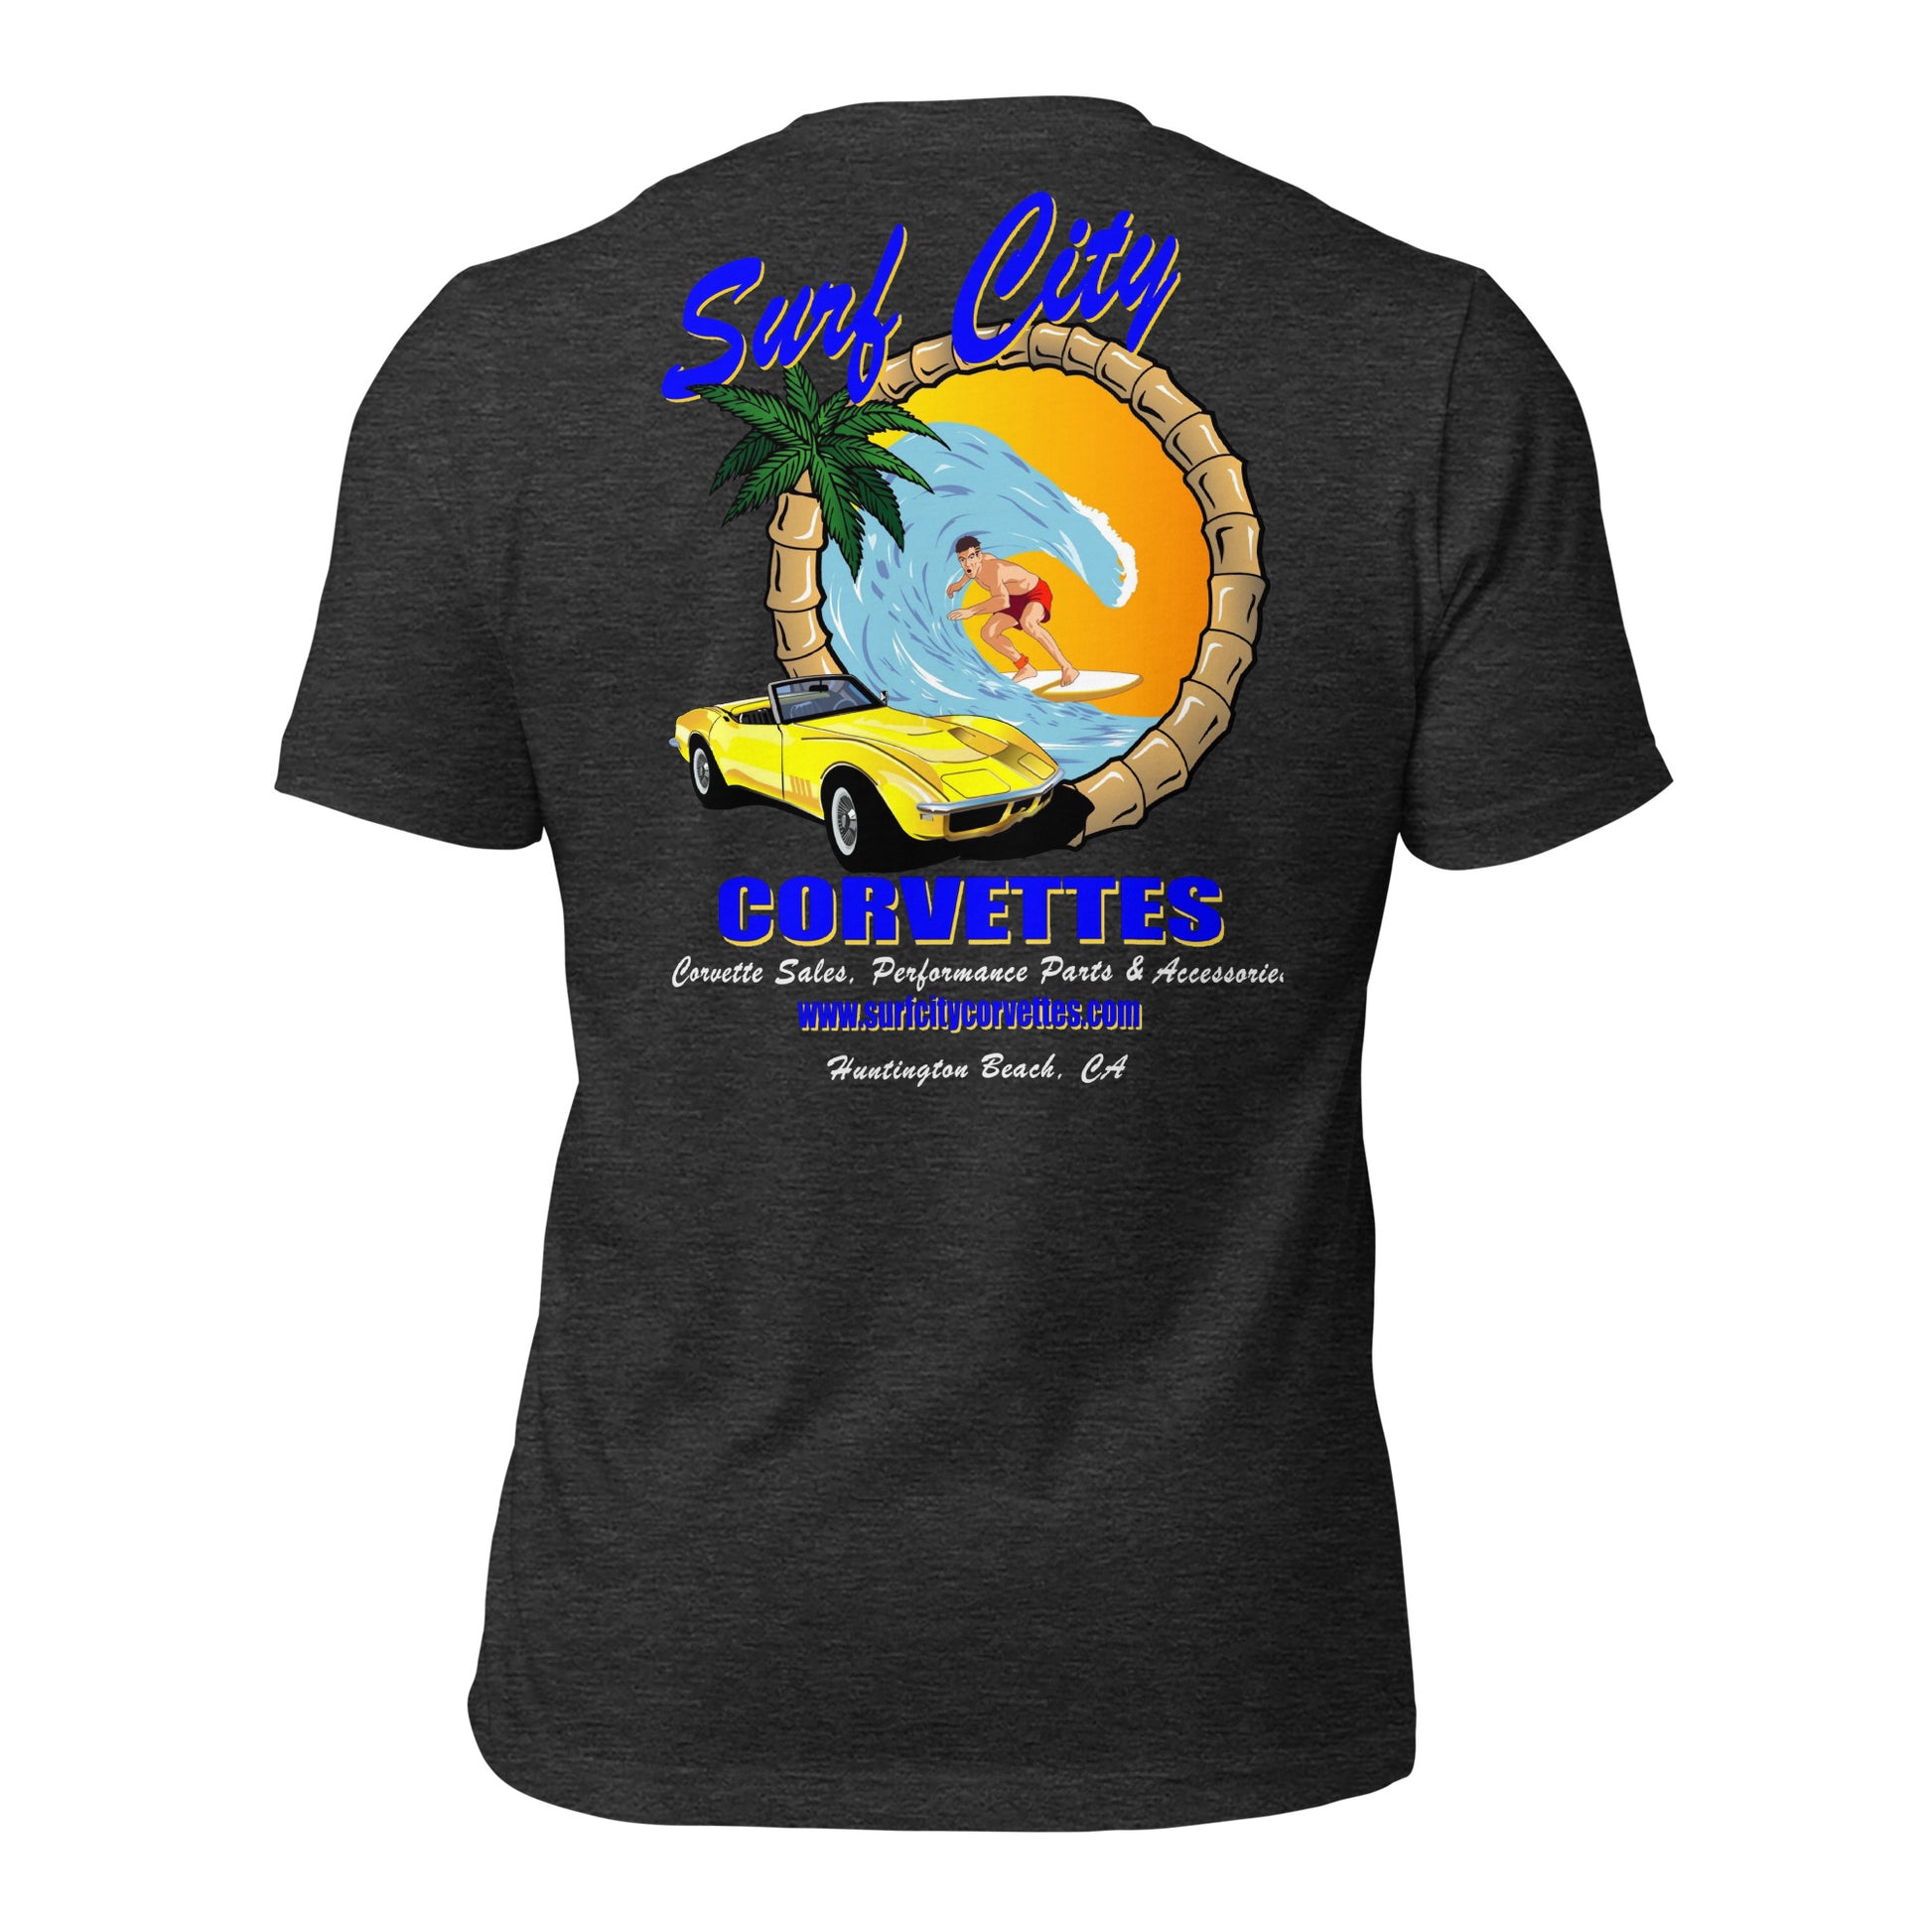 Surf City Corvettes T-Shirt